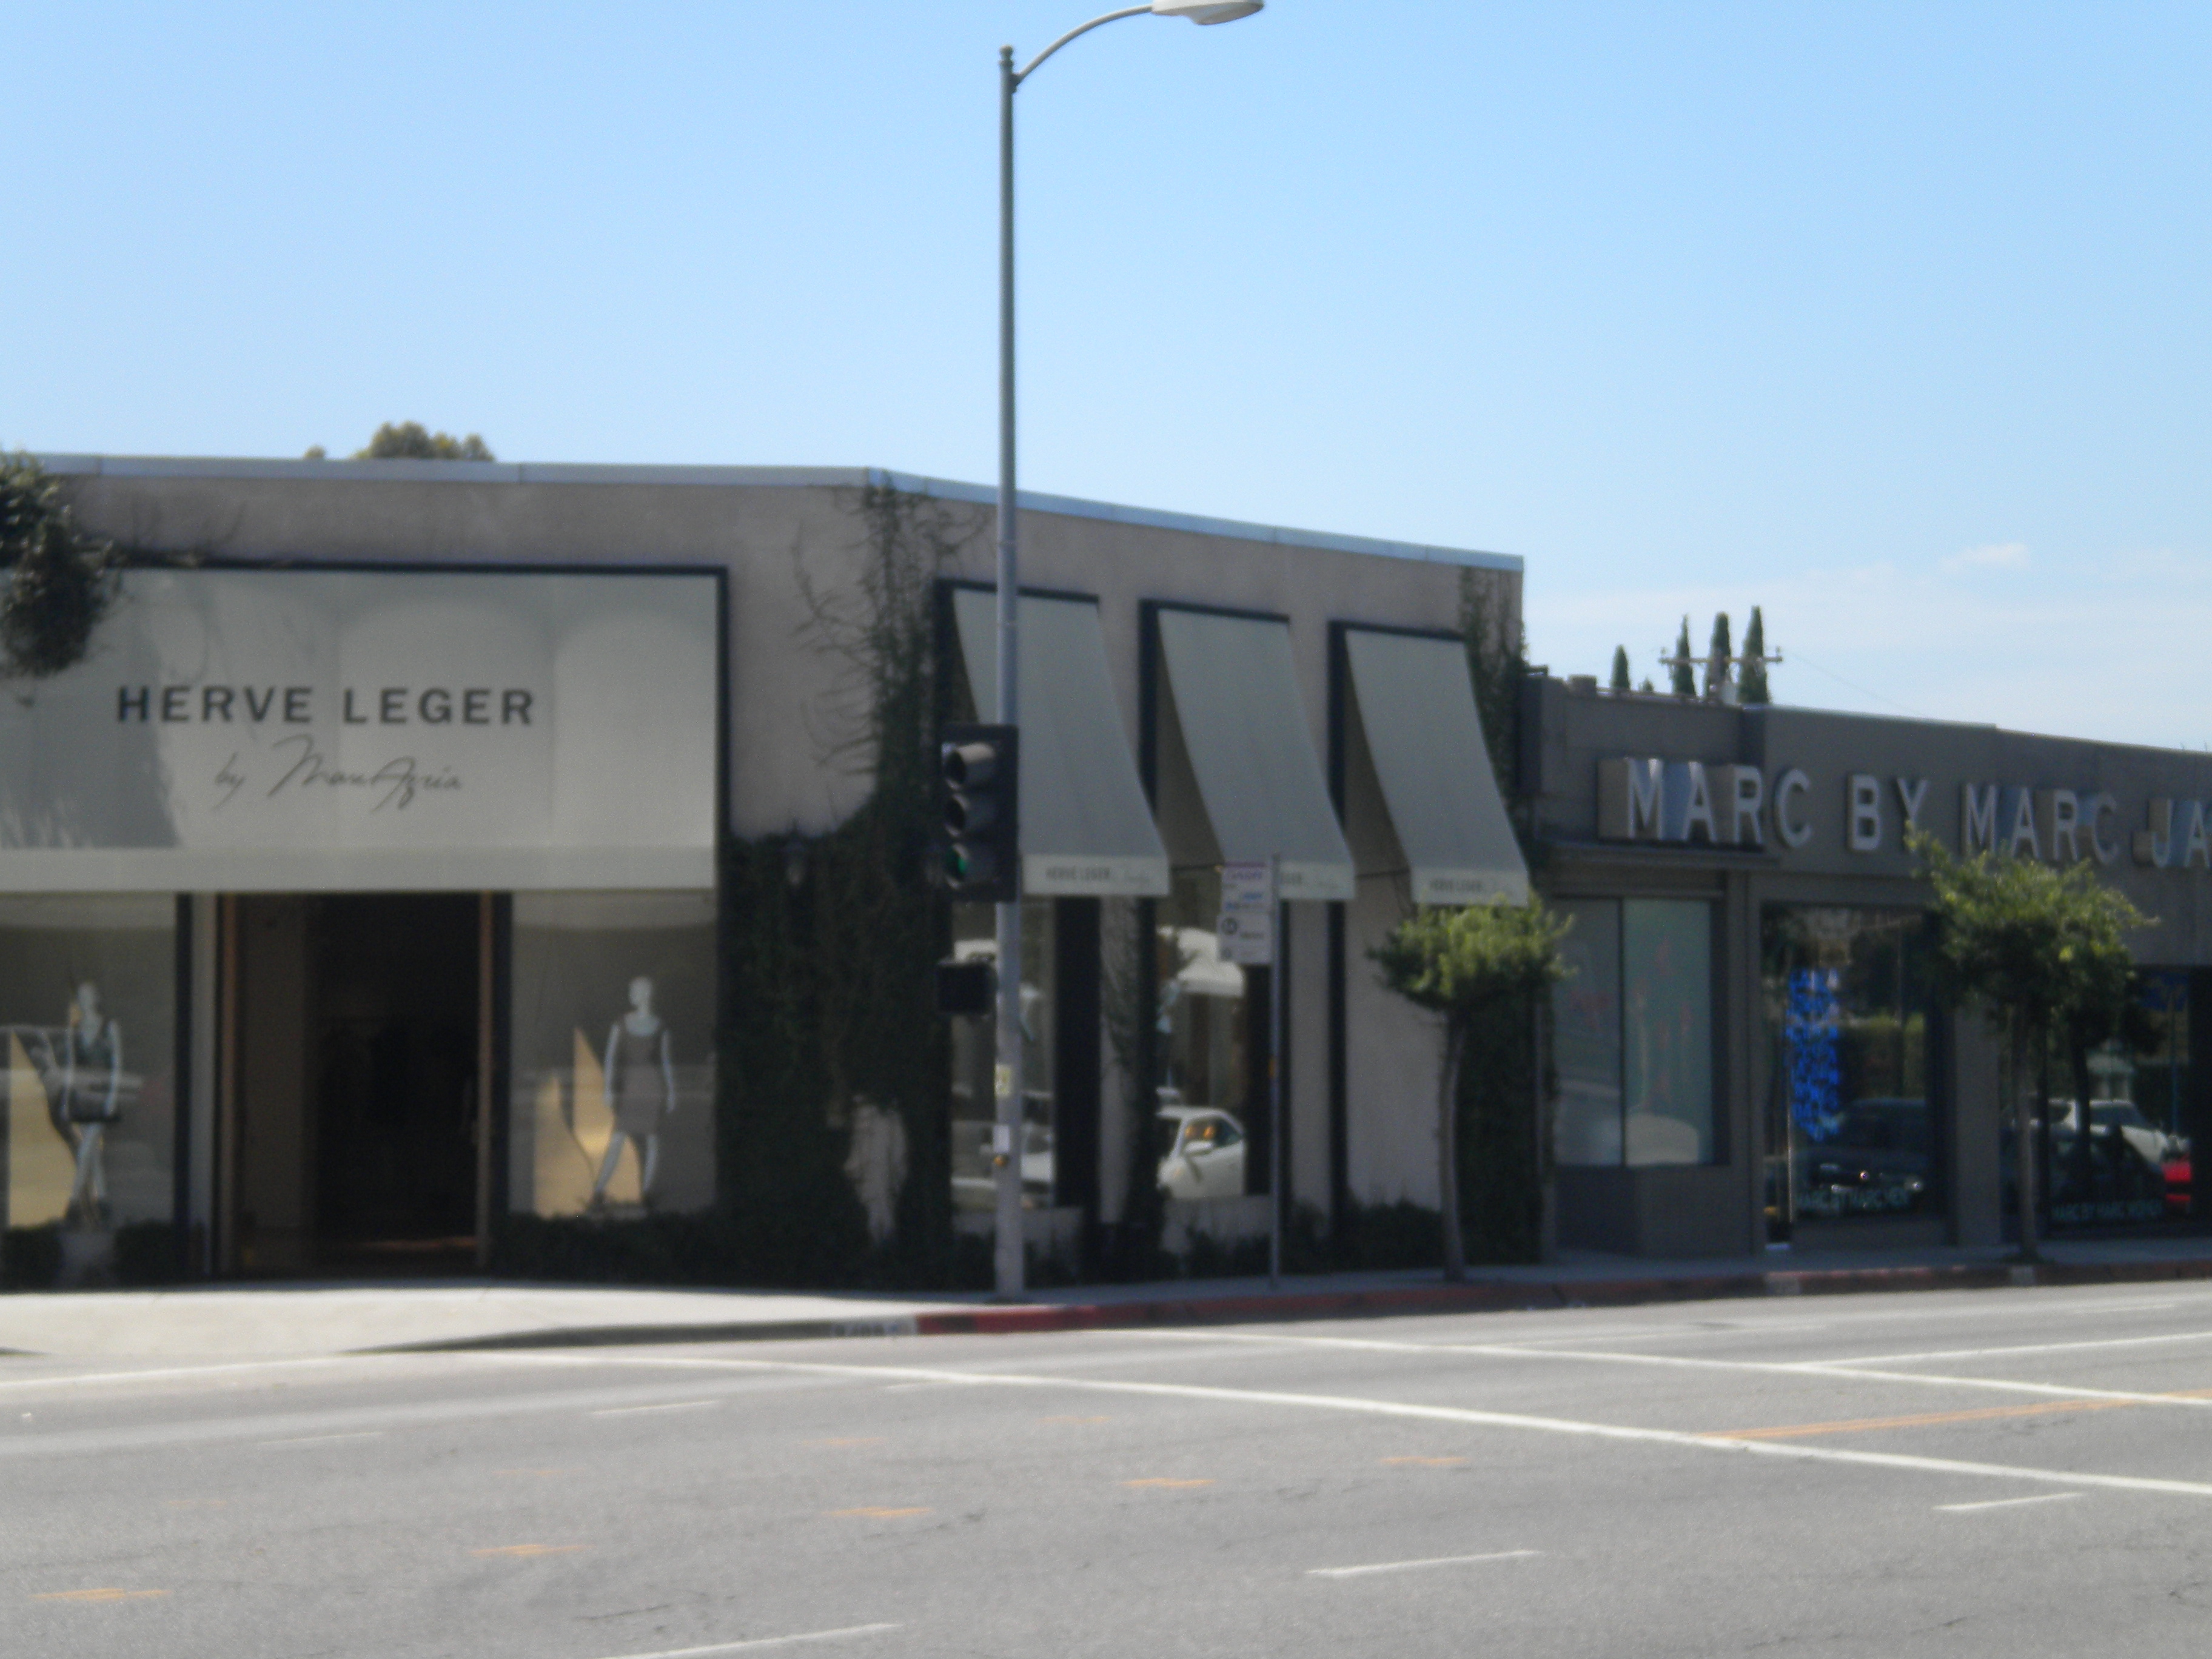 Tiendas de Melrose Ave. Los Angeles